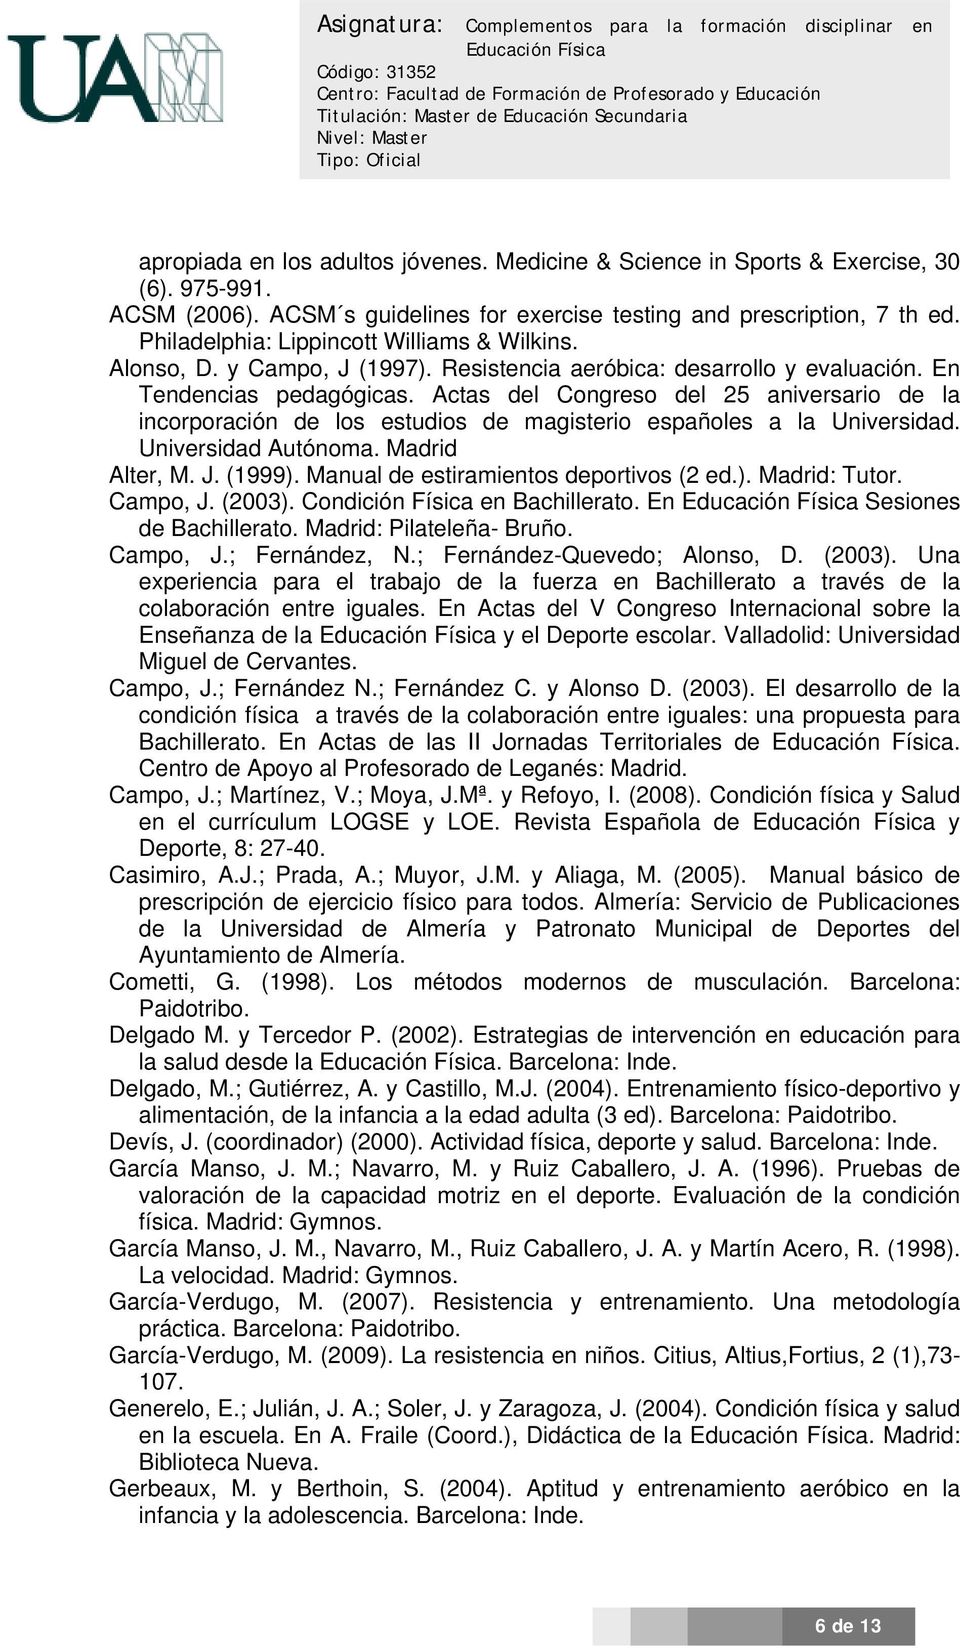 Actas del Congreso del 25 aniversario de la incorporación de los estudios de magisterio españoles a la Universidad. Universidad Autónoma. Madrid Alter, M. J. (1999).